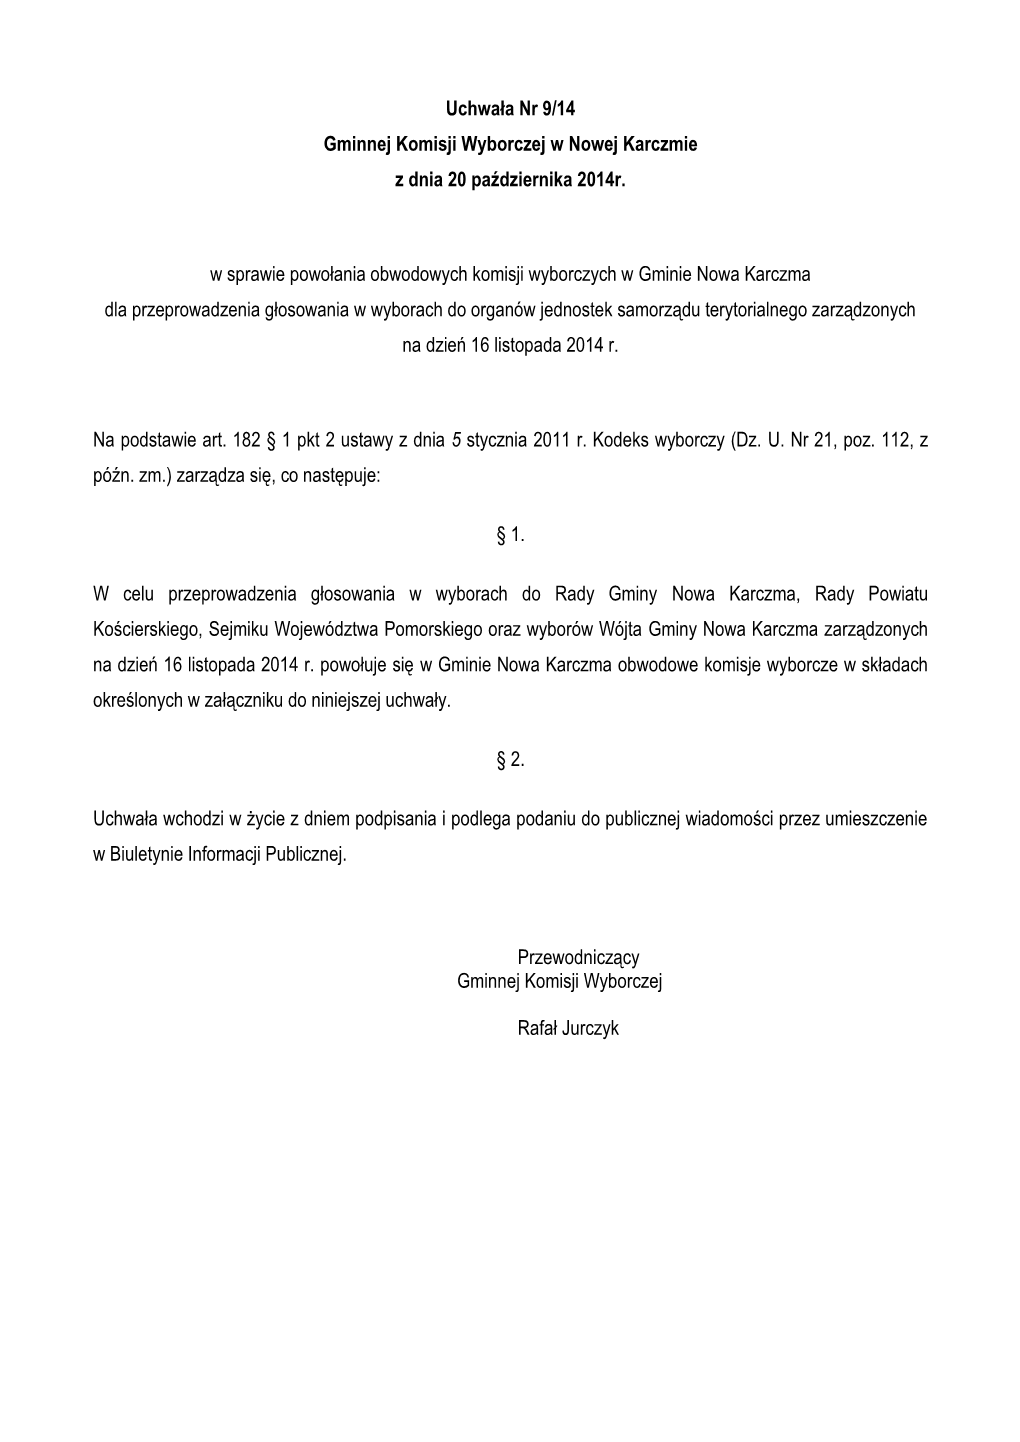 Uchwała Nr 9/14 Gminnej Komisji Wyborczej W Nowej Karczmie Z Dnia 20 Października 2014R